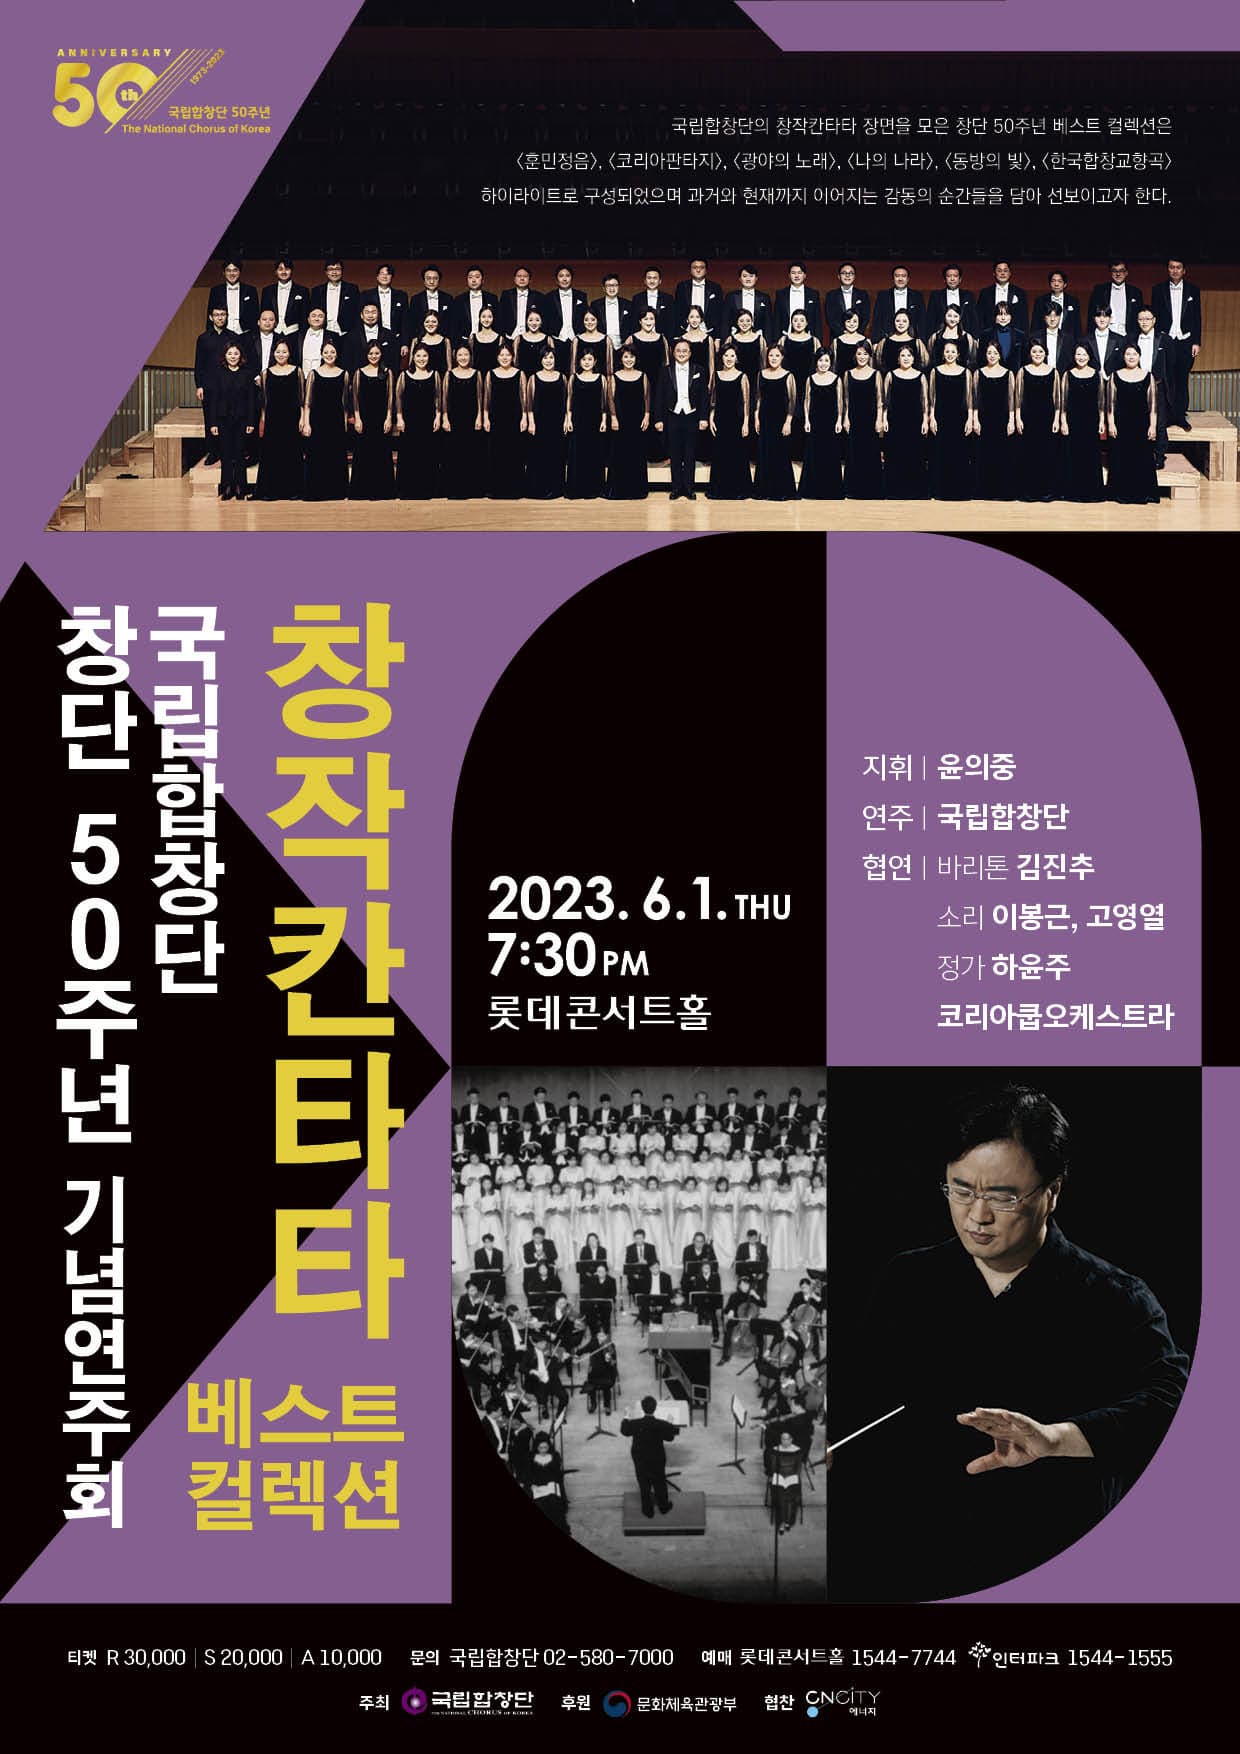 국립합창단 창단 50주년 기념연주회 '창작 칸타타 베스트 컬렉션' 포스터